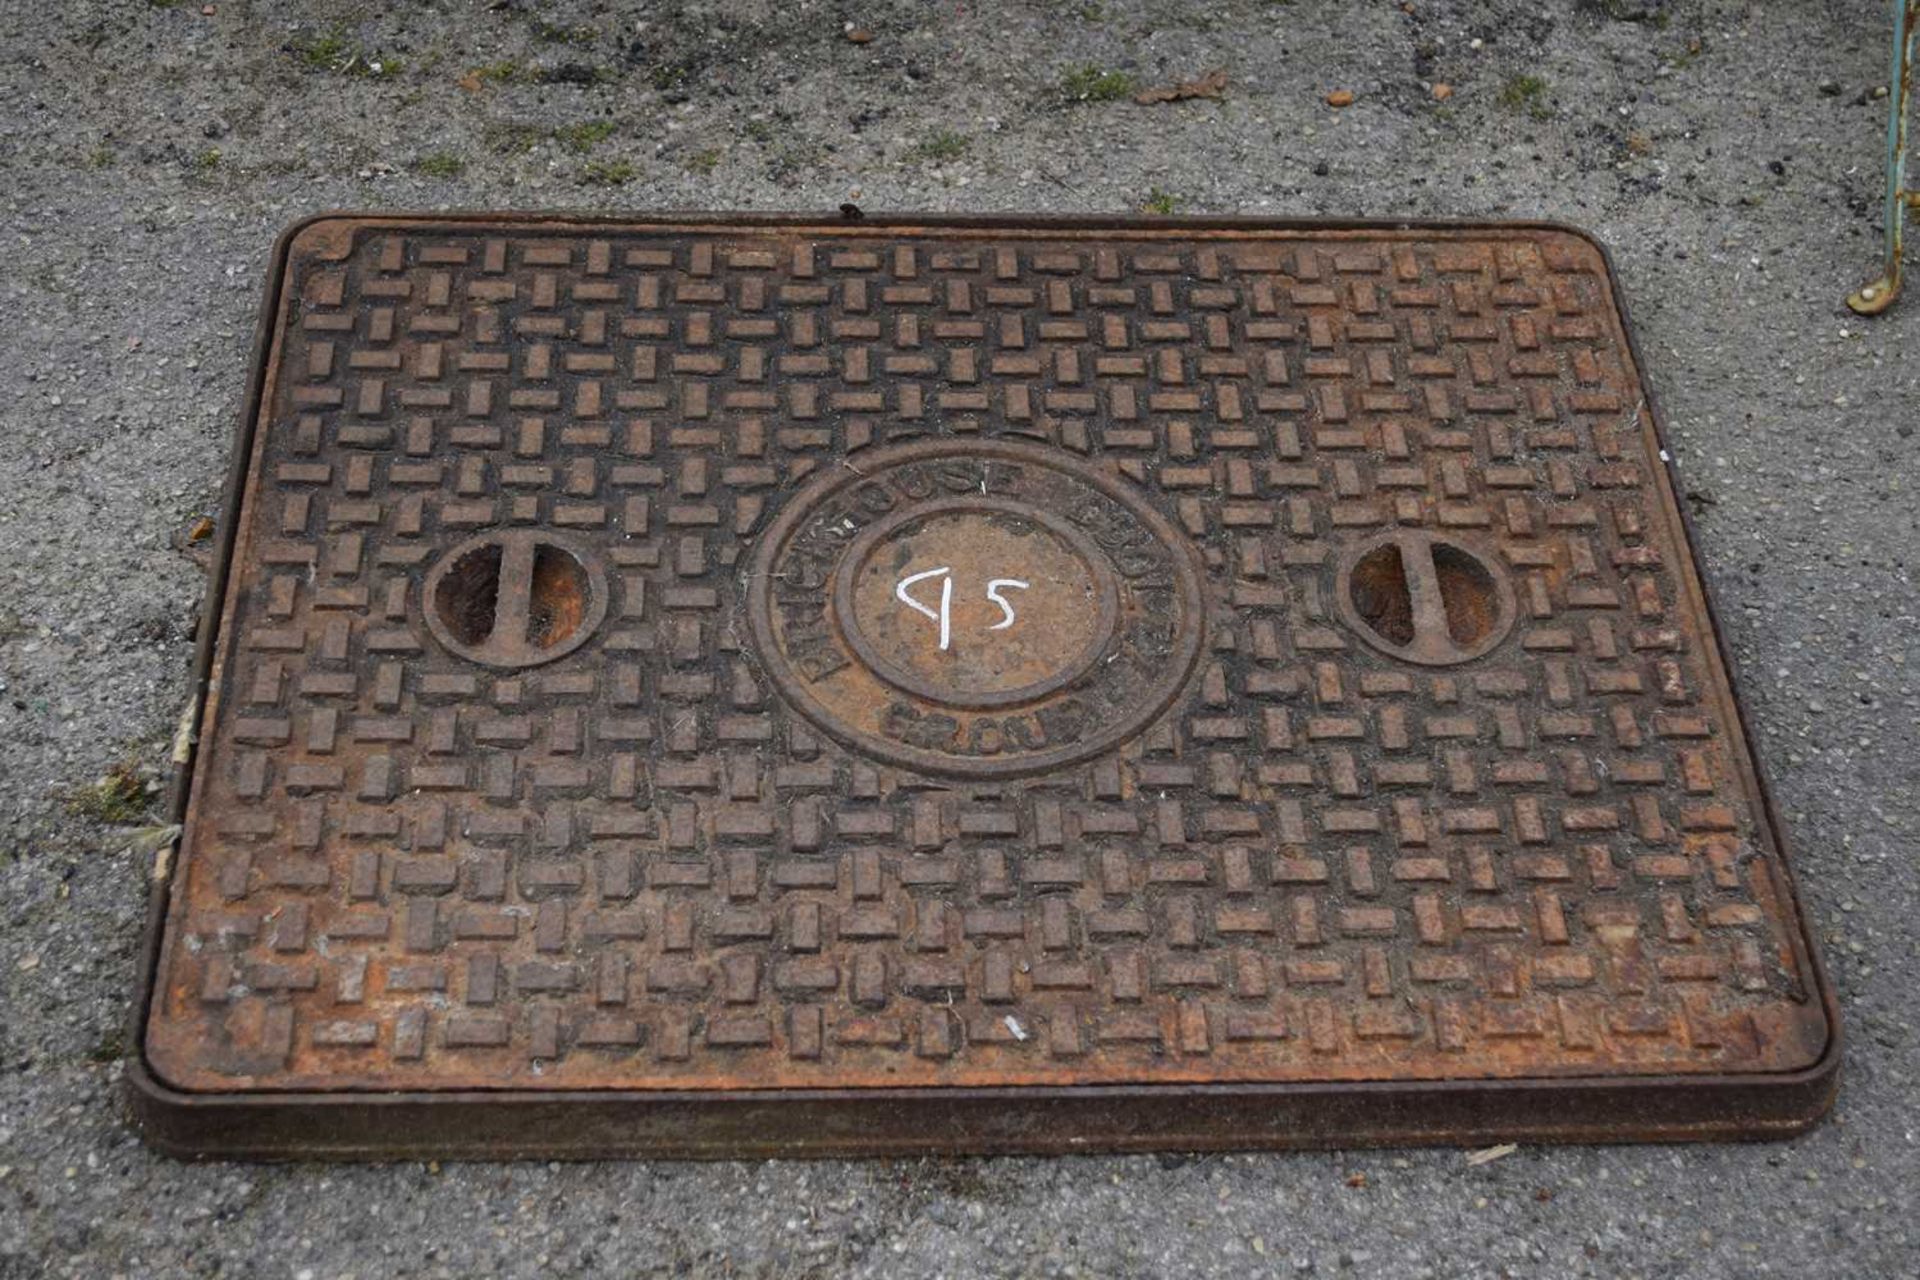 Cast iron manhole cover, 67cm x 52cm